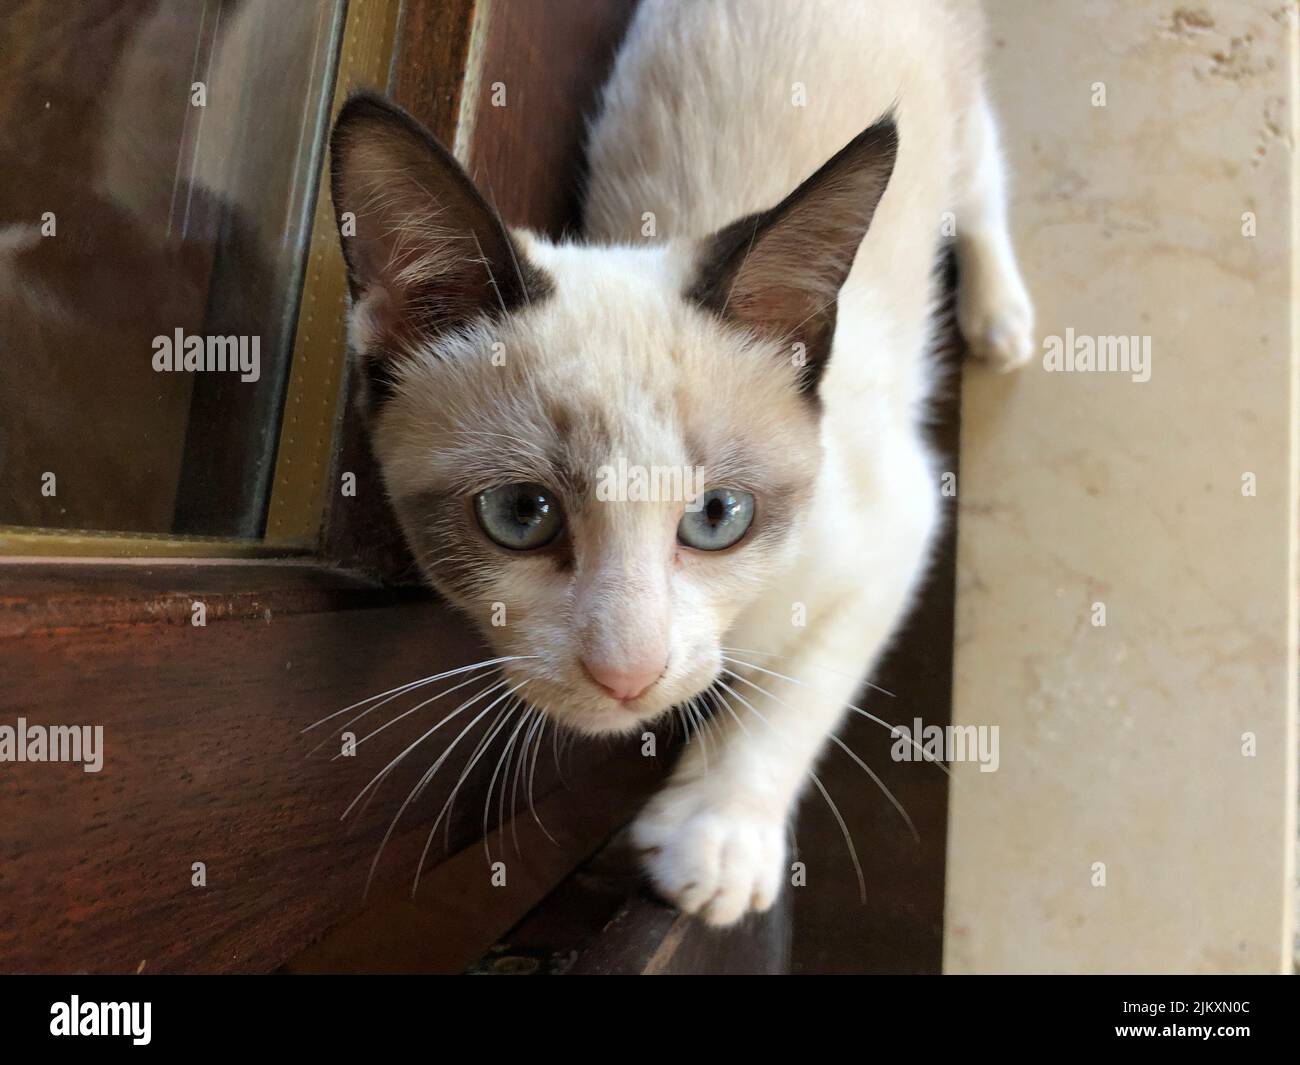 Vue de dessus d'un chat mignon avec des yeux bleu clair approchant et regardant soigneusement l'appareil photo Banque D'Images